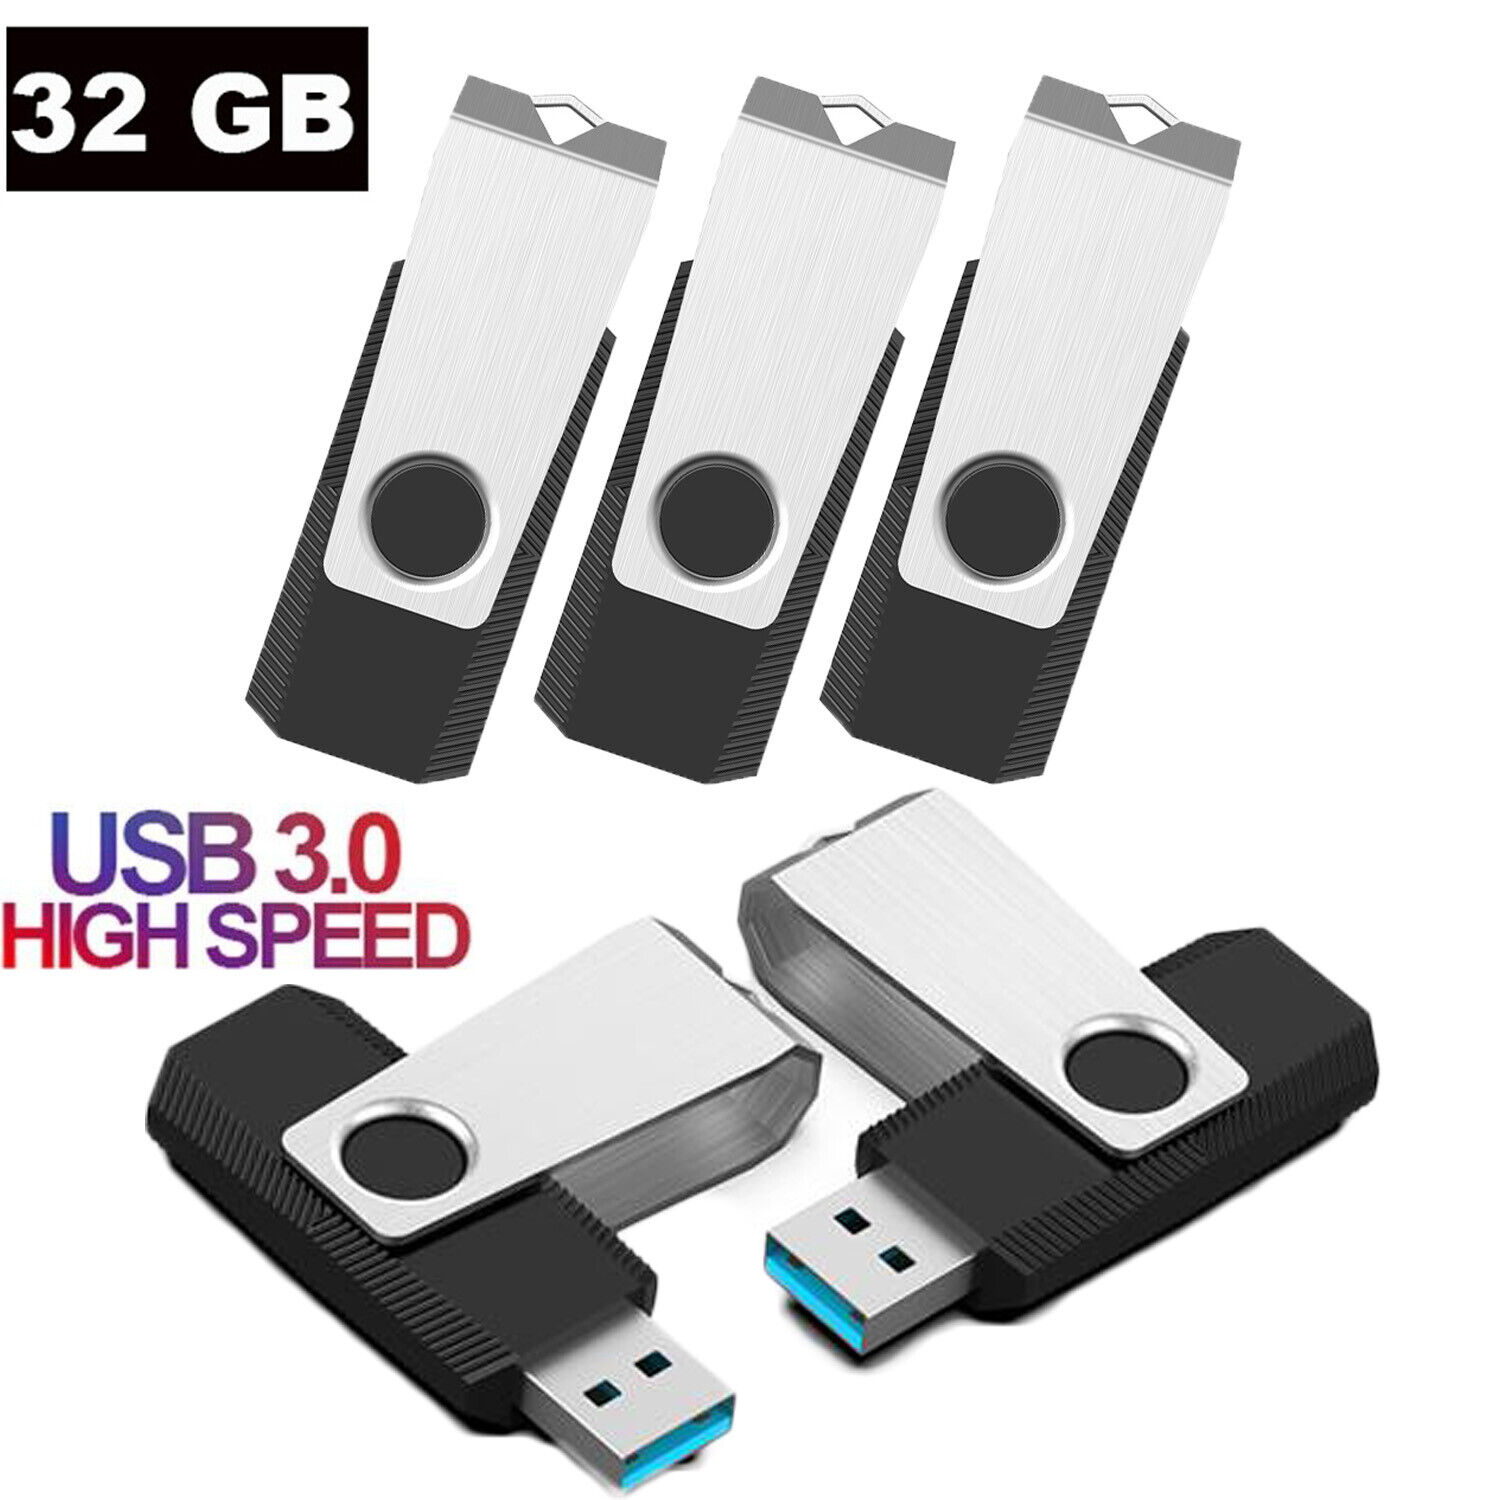 1/5pcs USB 3.0 Flash Memory Stick 32GB Swivel Flash Drive Thumb Drive High Speed